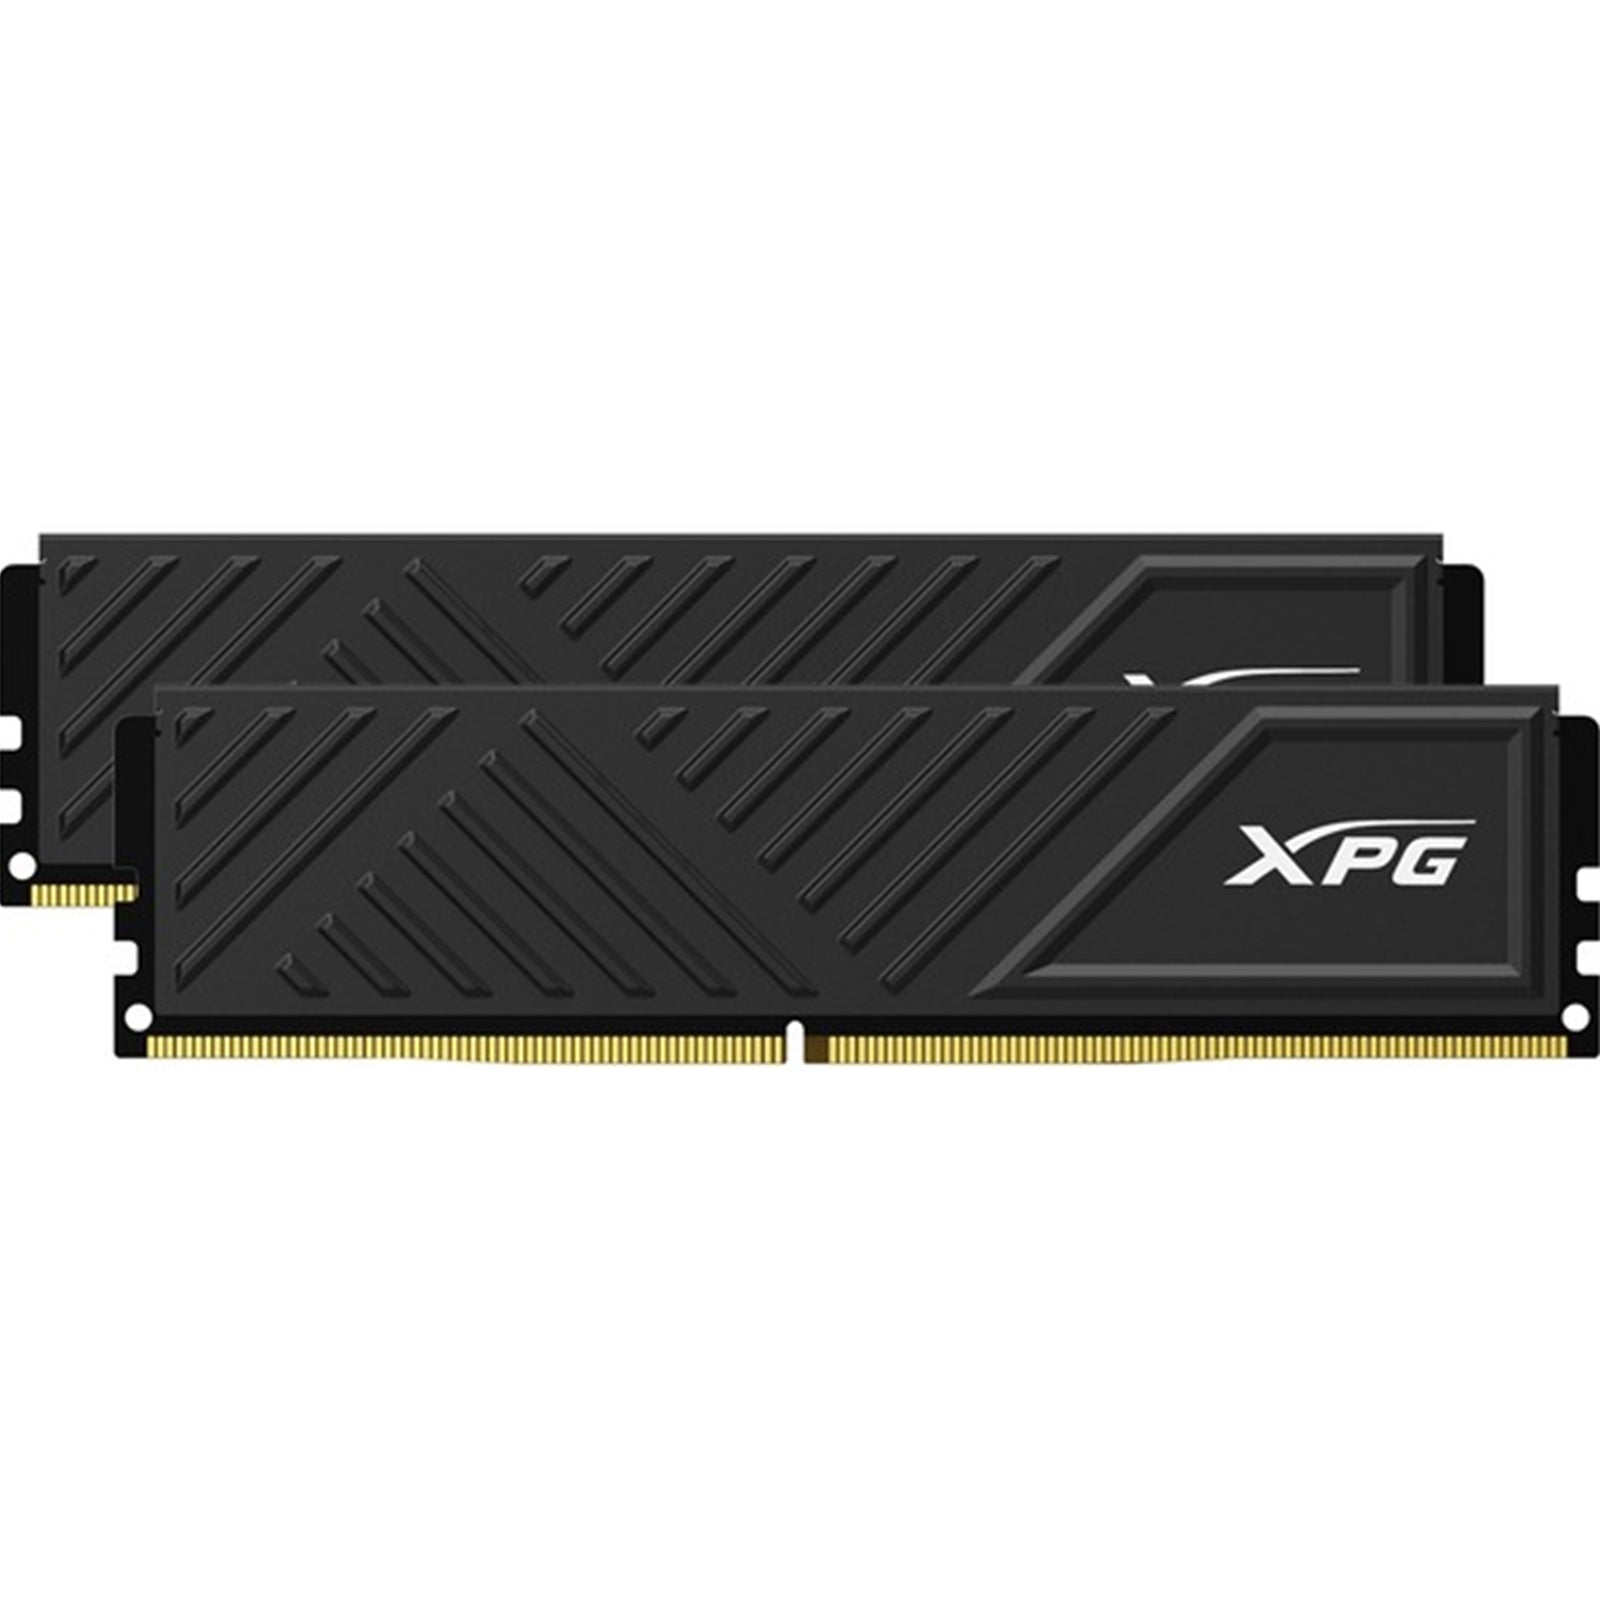 Adata XPG Gammix D35 16GB (2 x 8GB) DDR4 3200MHz RAM